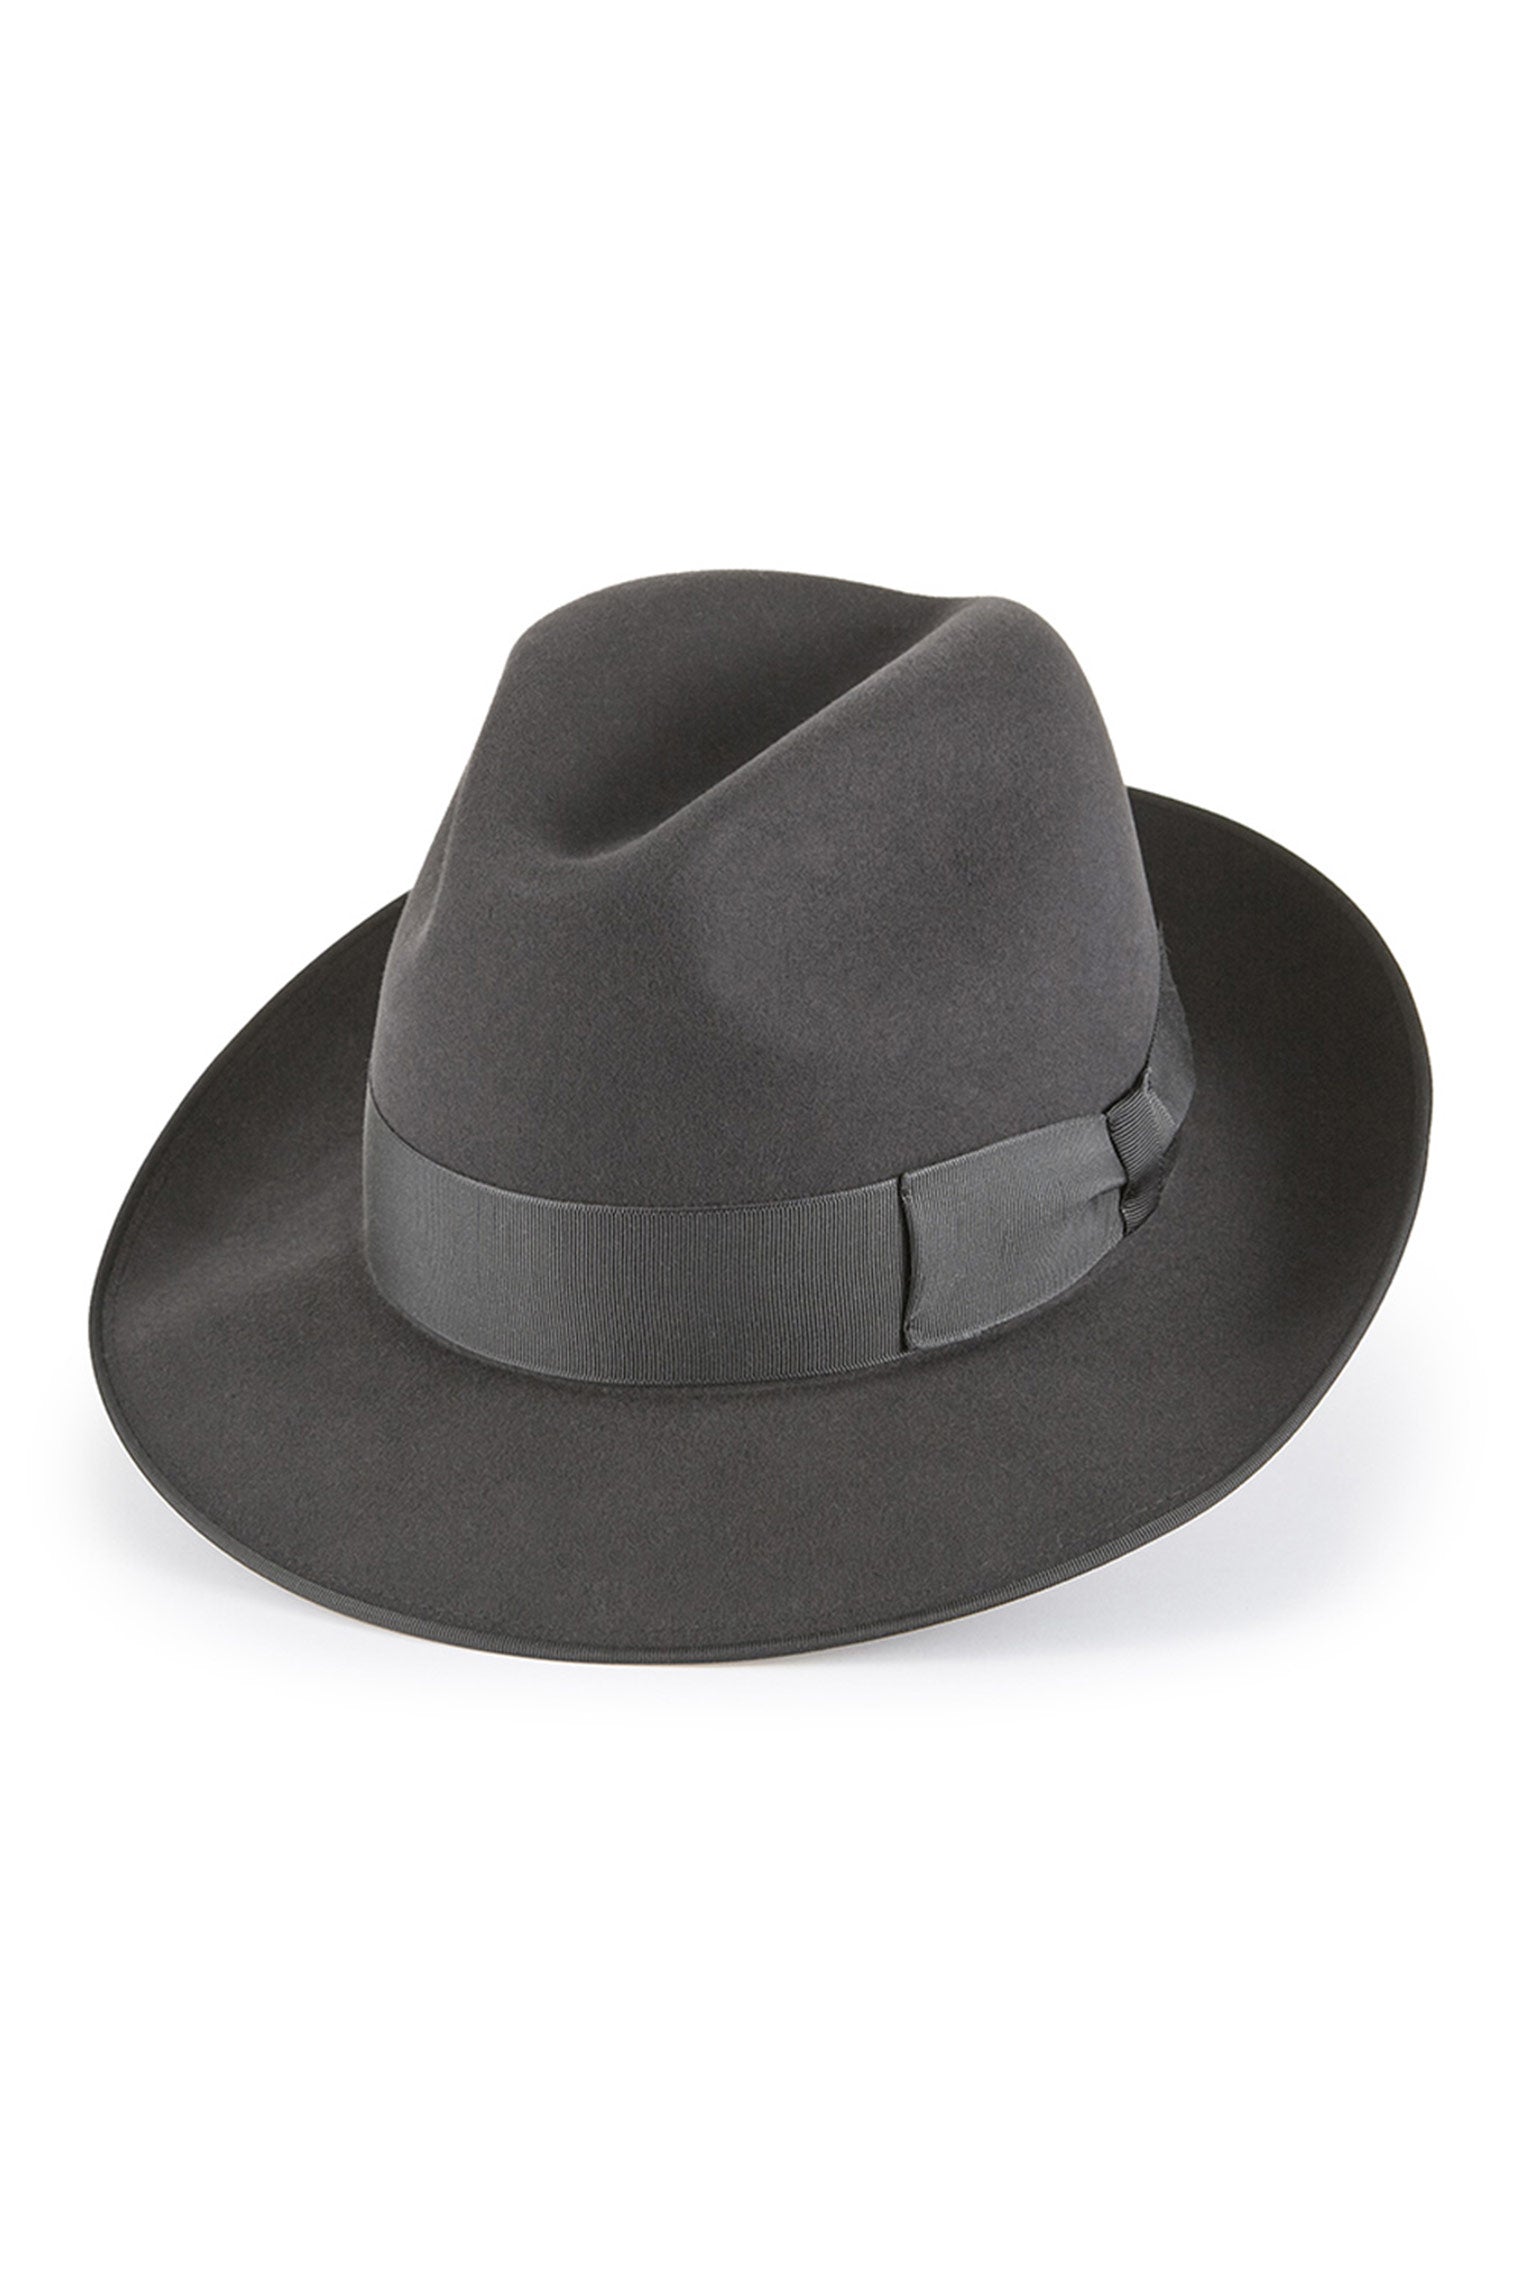 Escorial Wool Albany Trilby - Men's Hats - Lock & Co. Hatters London UK